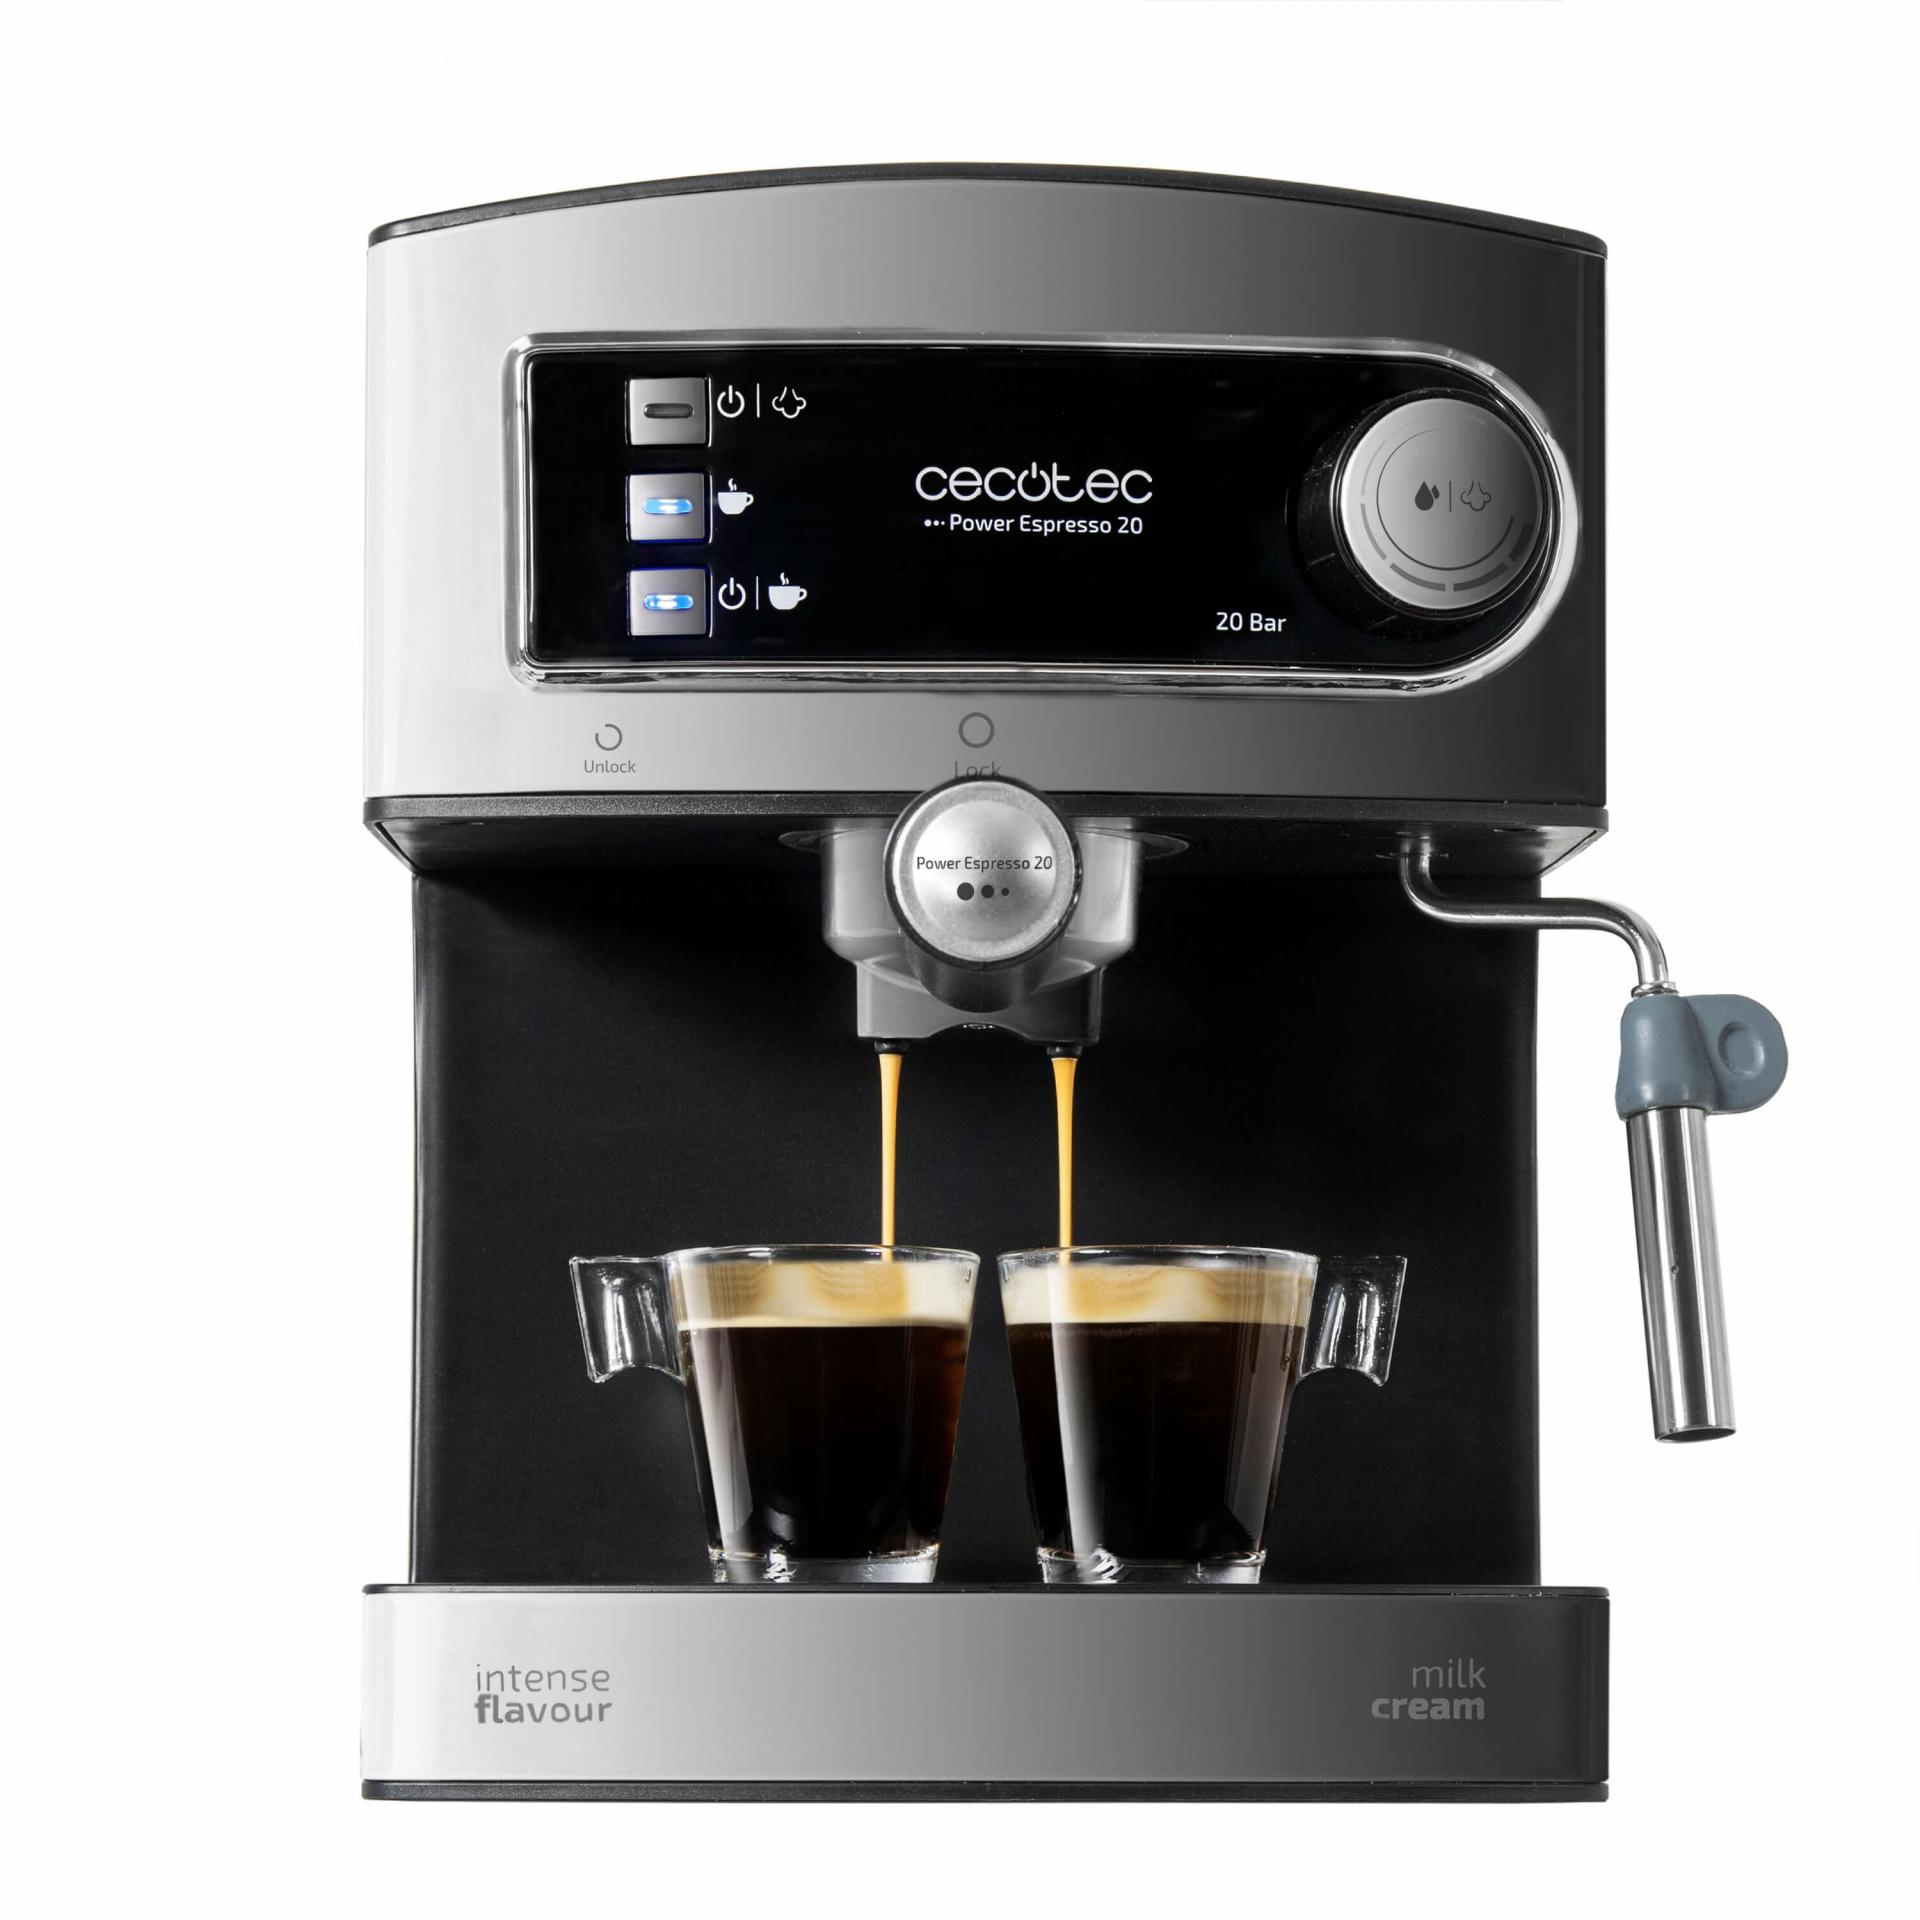 Cafetera Power Espresso 20bar cecotec